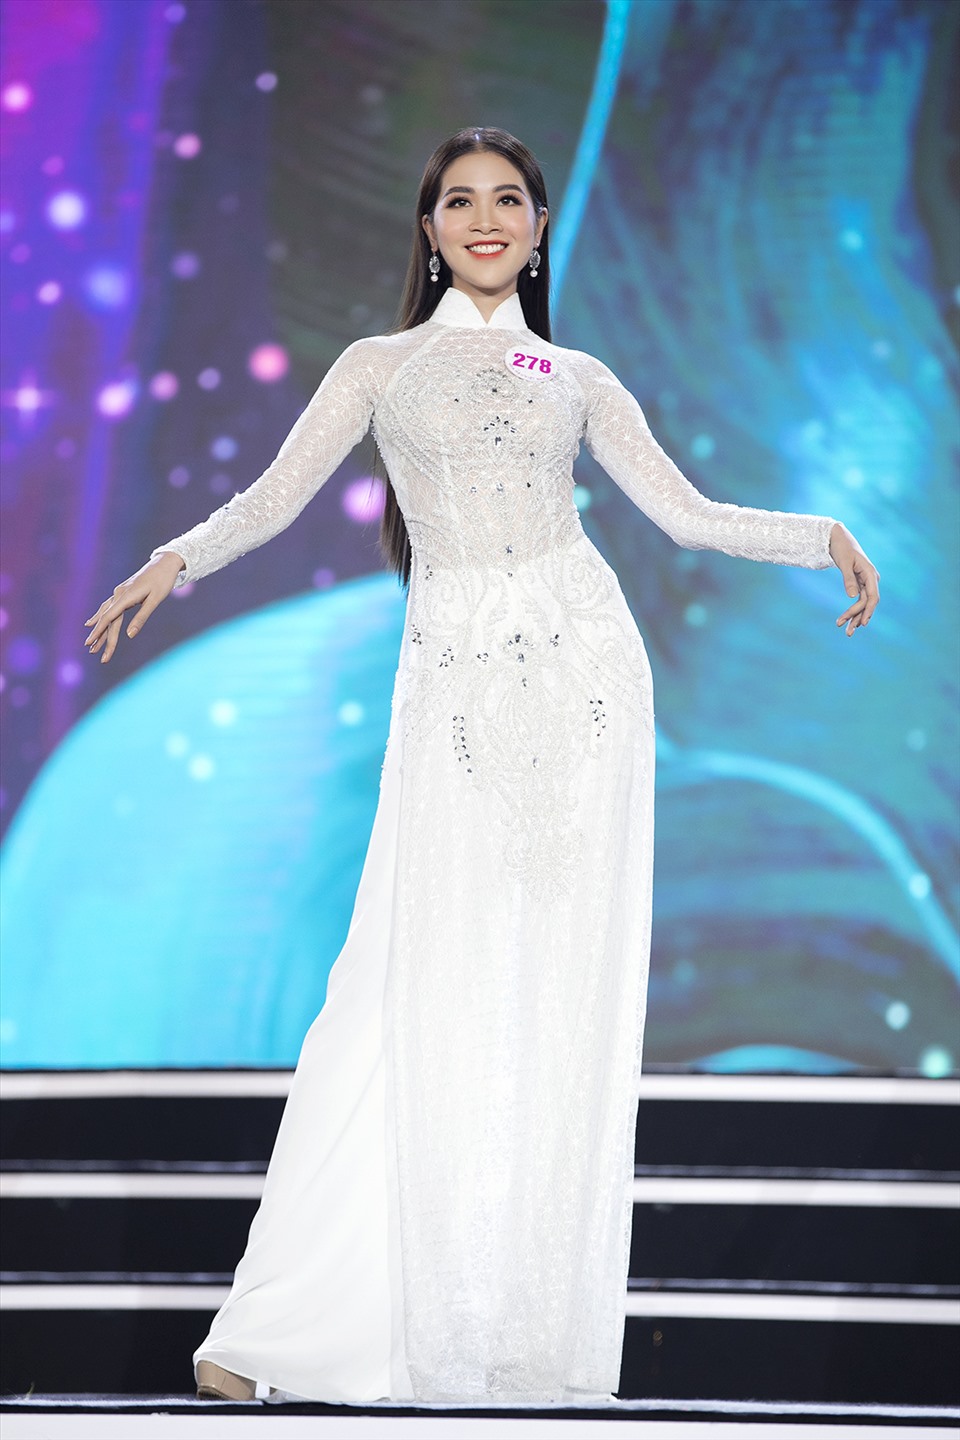 Người đẹp Nam Định còn có gương mặt sáng và nụ cười rạng rỡ. Bởi vậy, nhiều người không quá ngạc nhiên khi Quỳnh Trang lọt top 35 thí sinh vào chung kết Hoa hậu Việt Nam. Ảnh: Kiếng Cận.